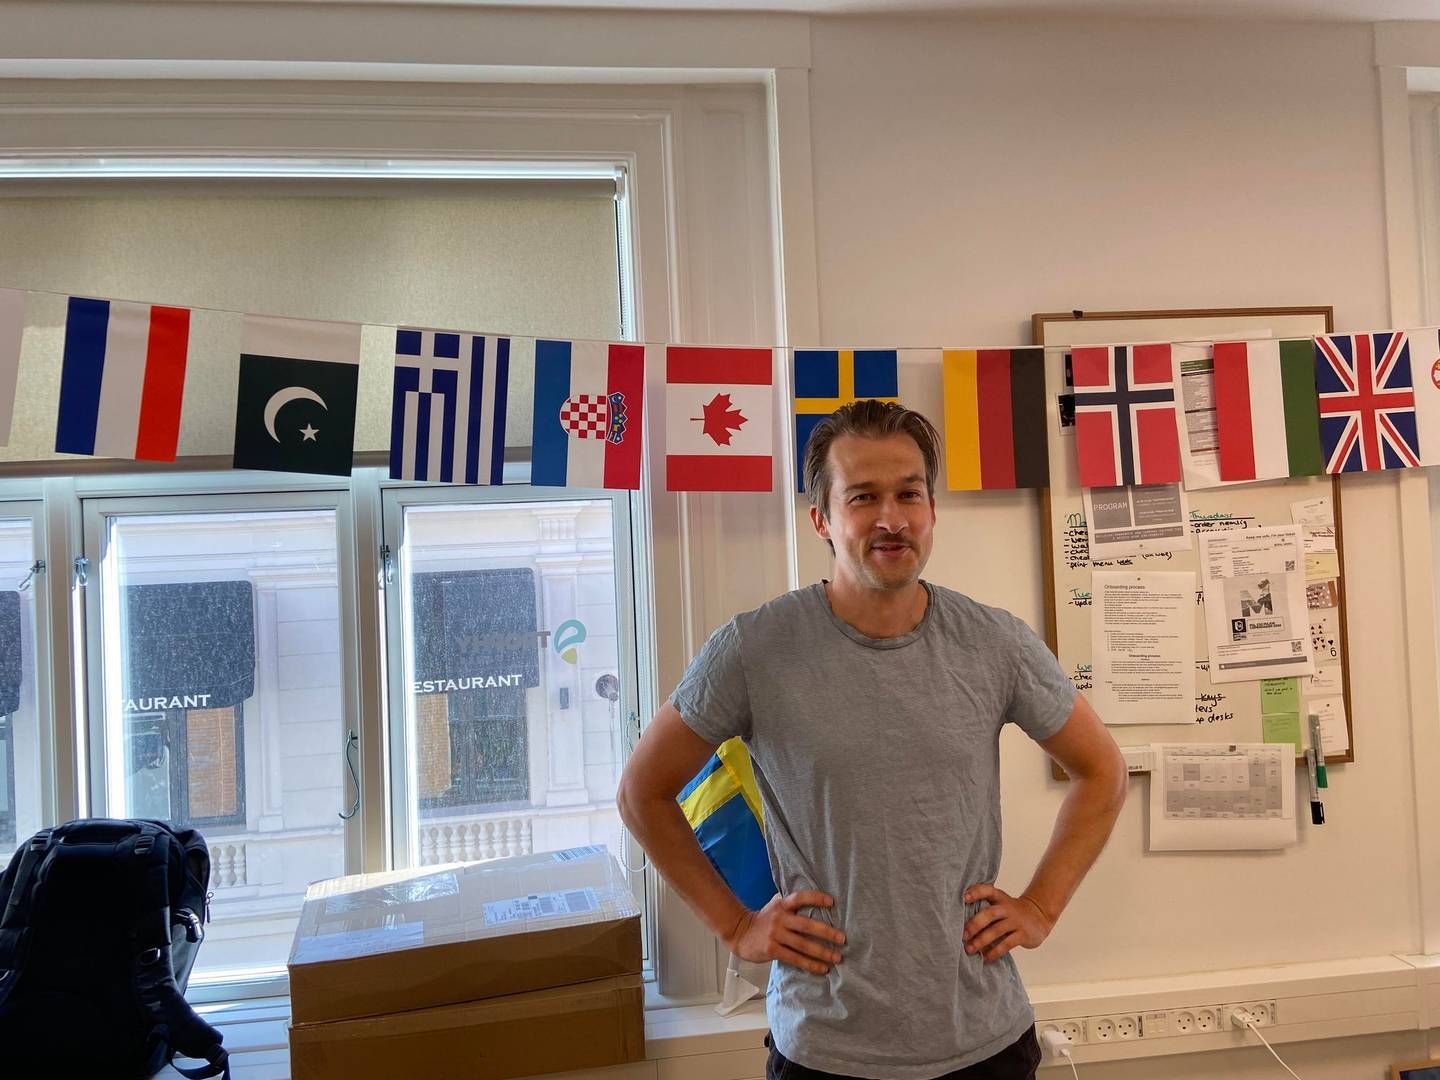 Søren Gleie, adm. direktør foran en stribe af flag, som repræsenterer medarbejdernes nationalitet. | Foto: Frederik Therkildsen